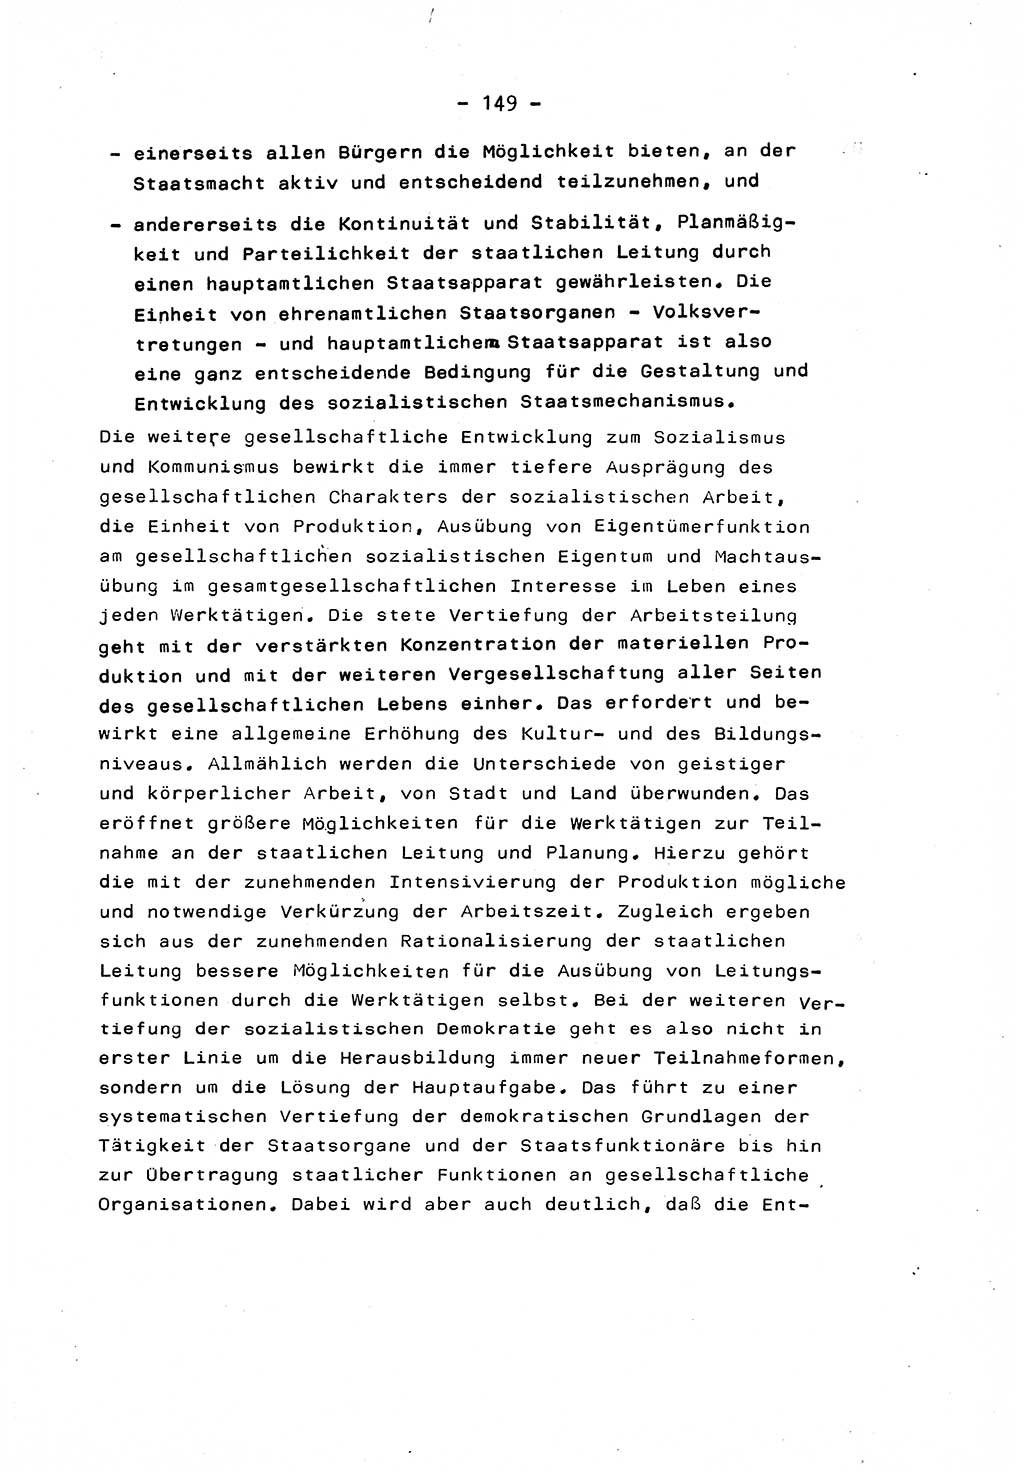 Marxistisch-leninistische Staats- und Rechtstheorie [Deutsche Demokratische Republik (DDR)] 1975, Seite 149 (ML St.-R.-Th. DDR 1975, S. 149)